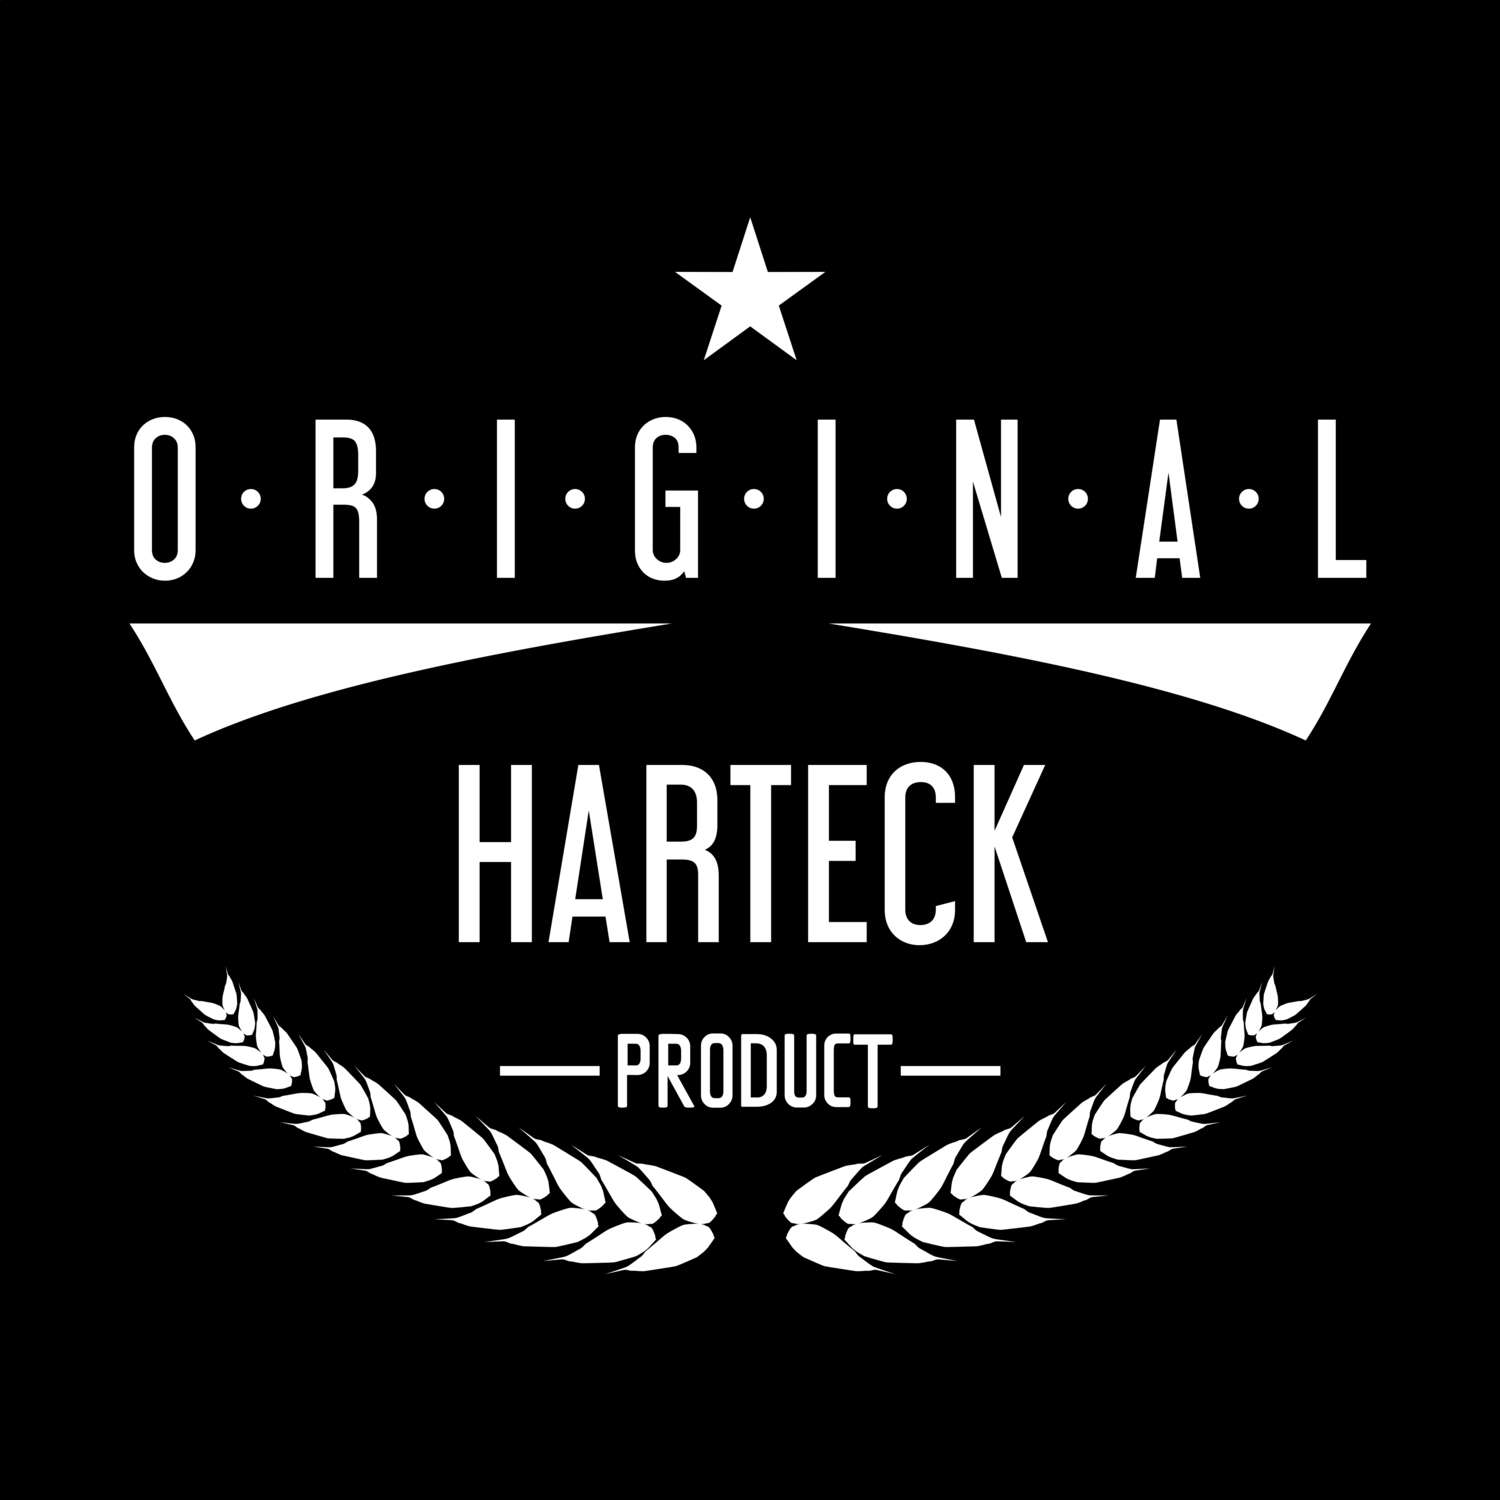 Harteck T-Shirt »Original Product«